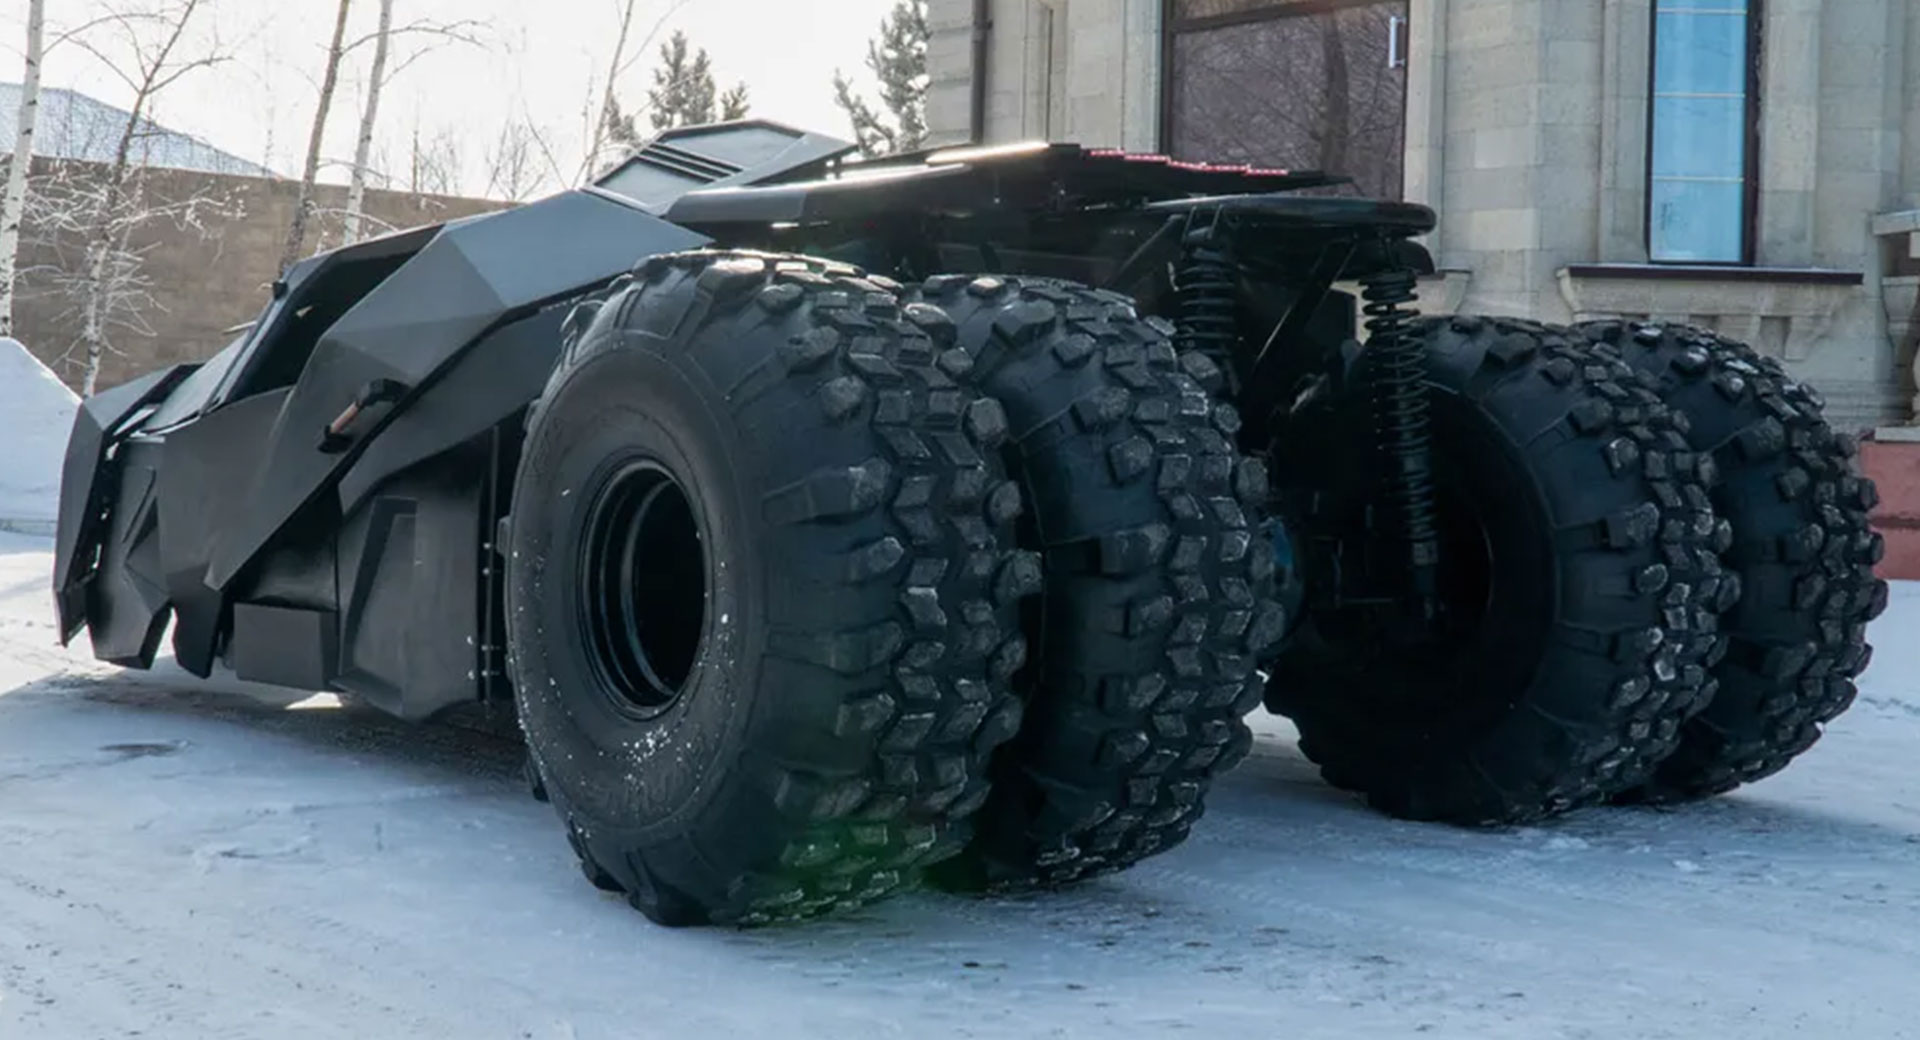 شاهد.. نسخة من سيارة باتمان الخارقة مع محرِّك "تويوتا V8" وهيكل مصنوع يدوياً بالكامل للبيع مقابل 400 ألف دولار 3 12/5/2022 - 7:47 ص